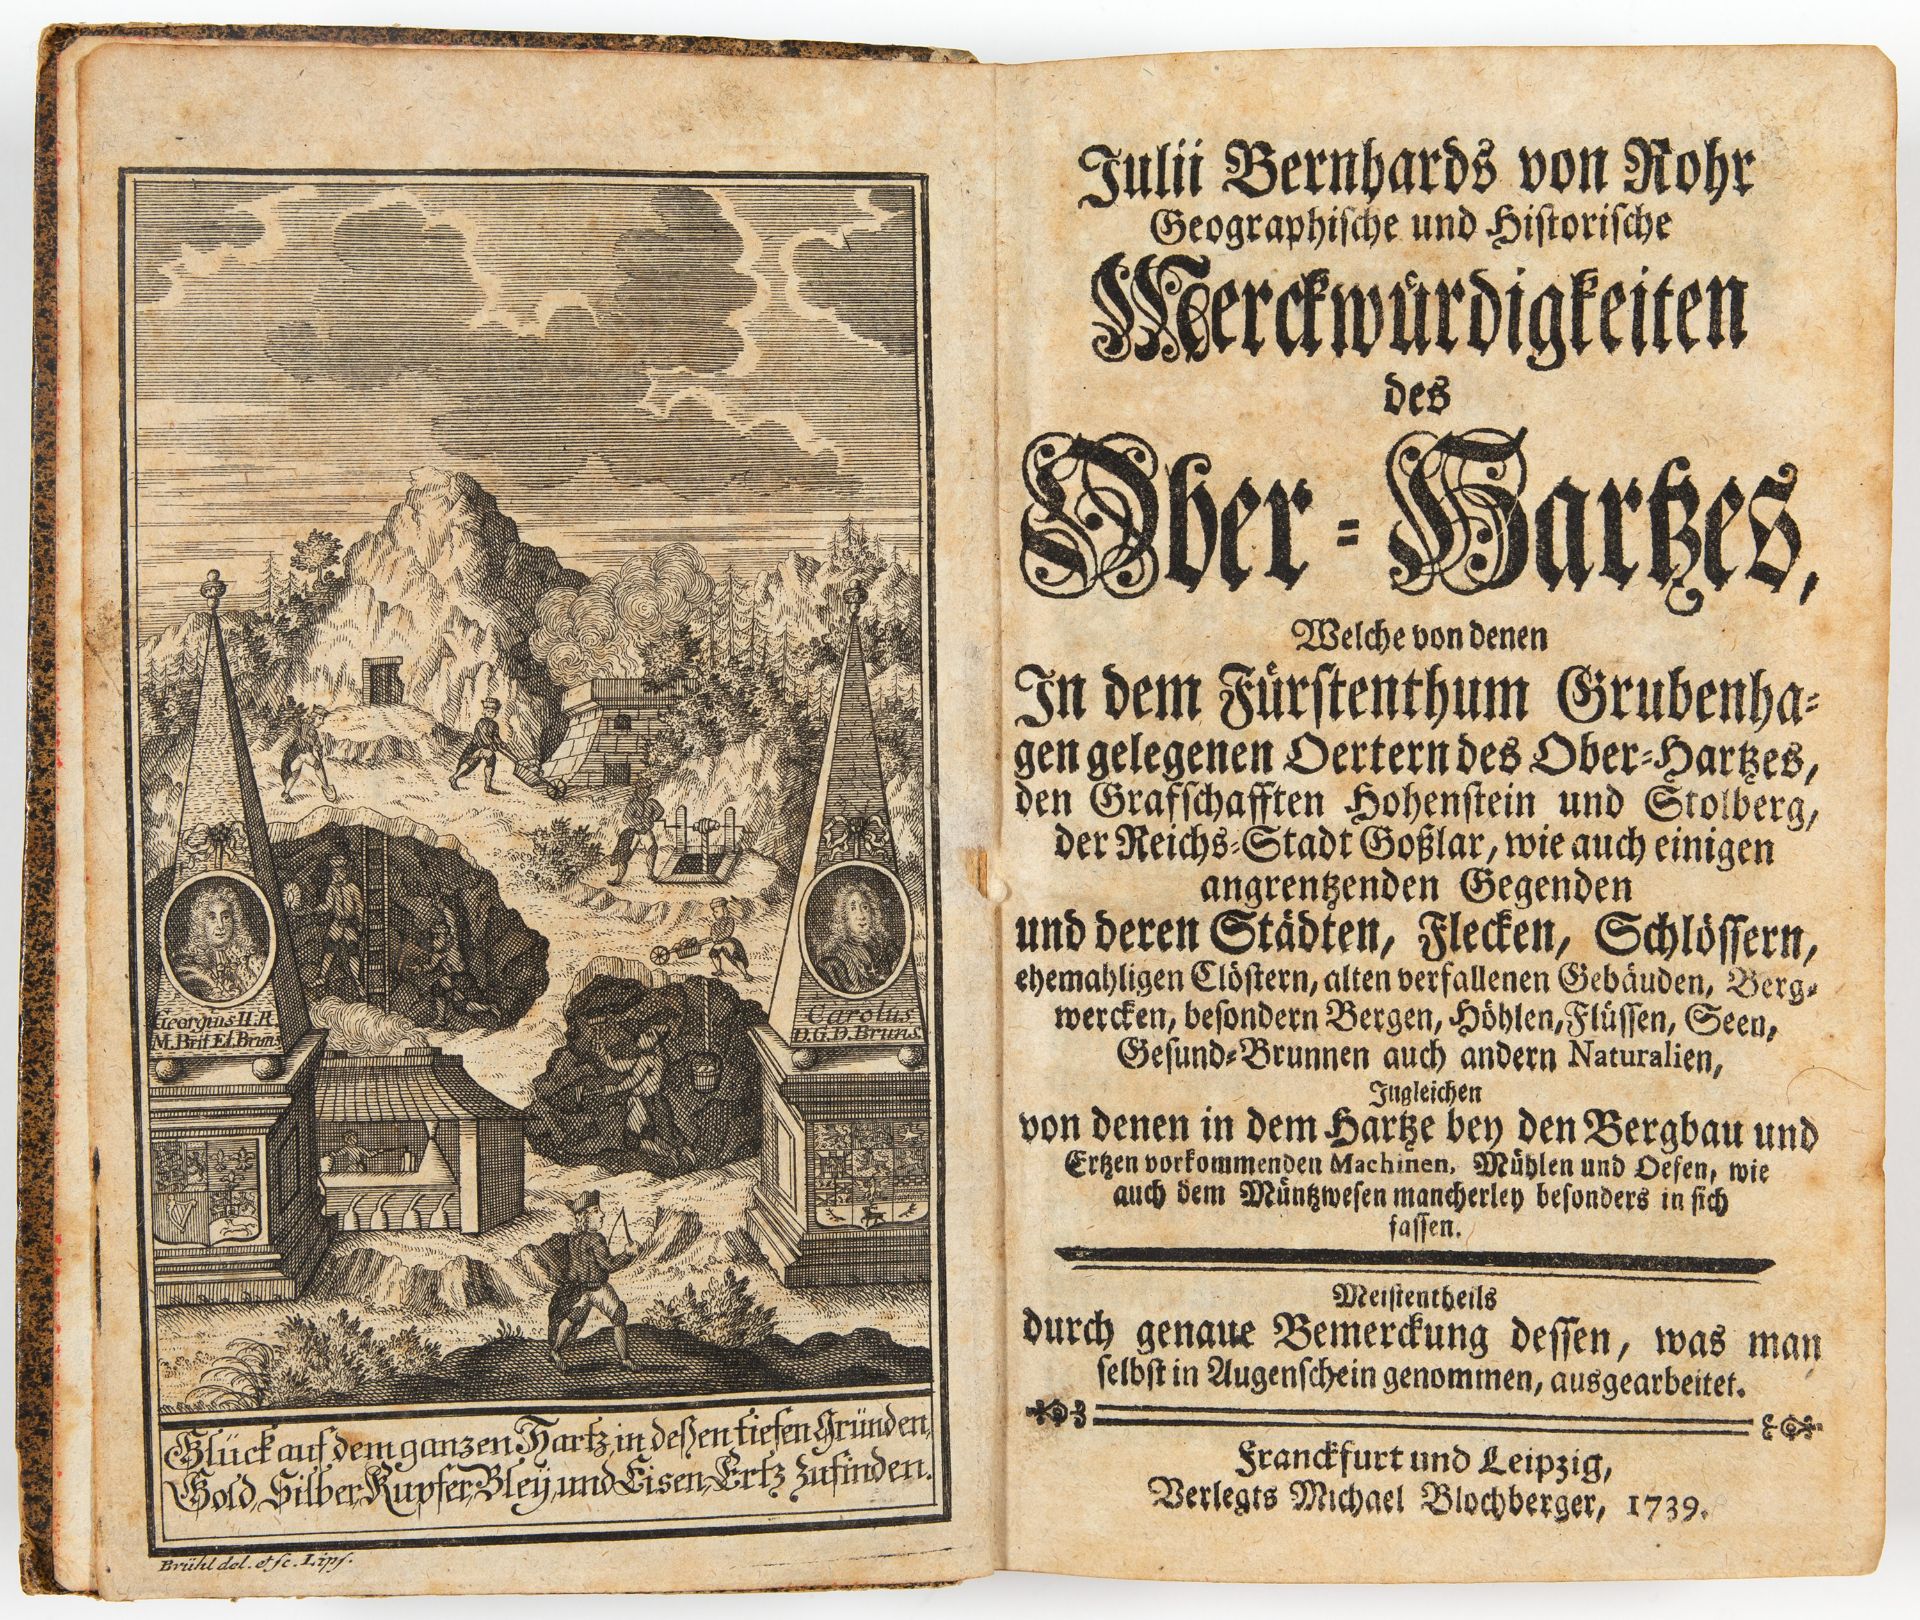 J. B. von Rohr, Merckwürdigkeiten des Ober-Hartzes. Ffm. und Lpz. 1739.